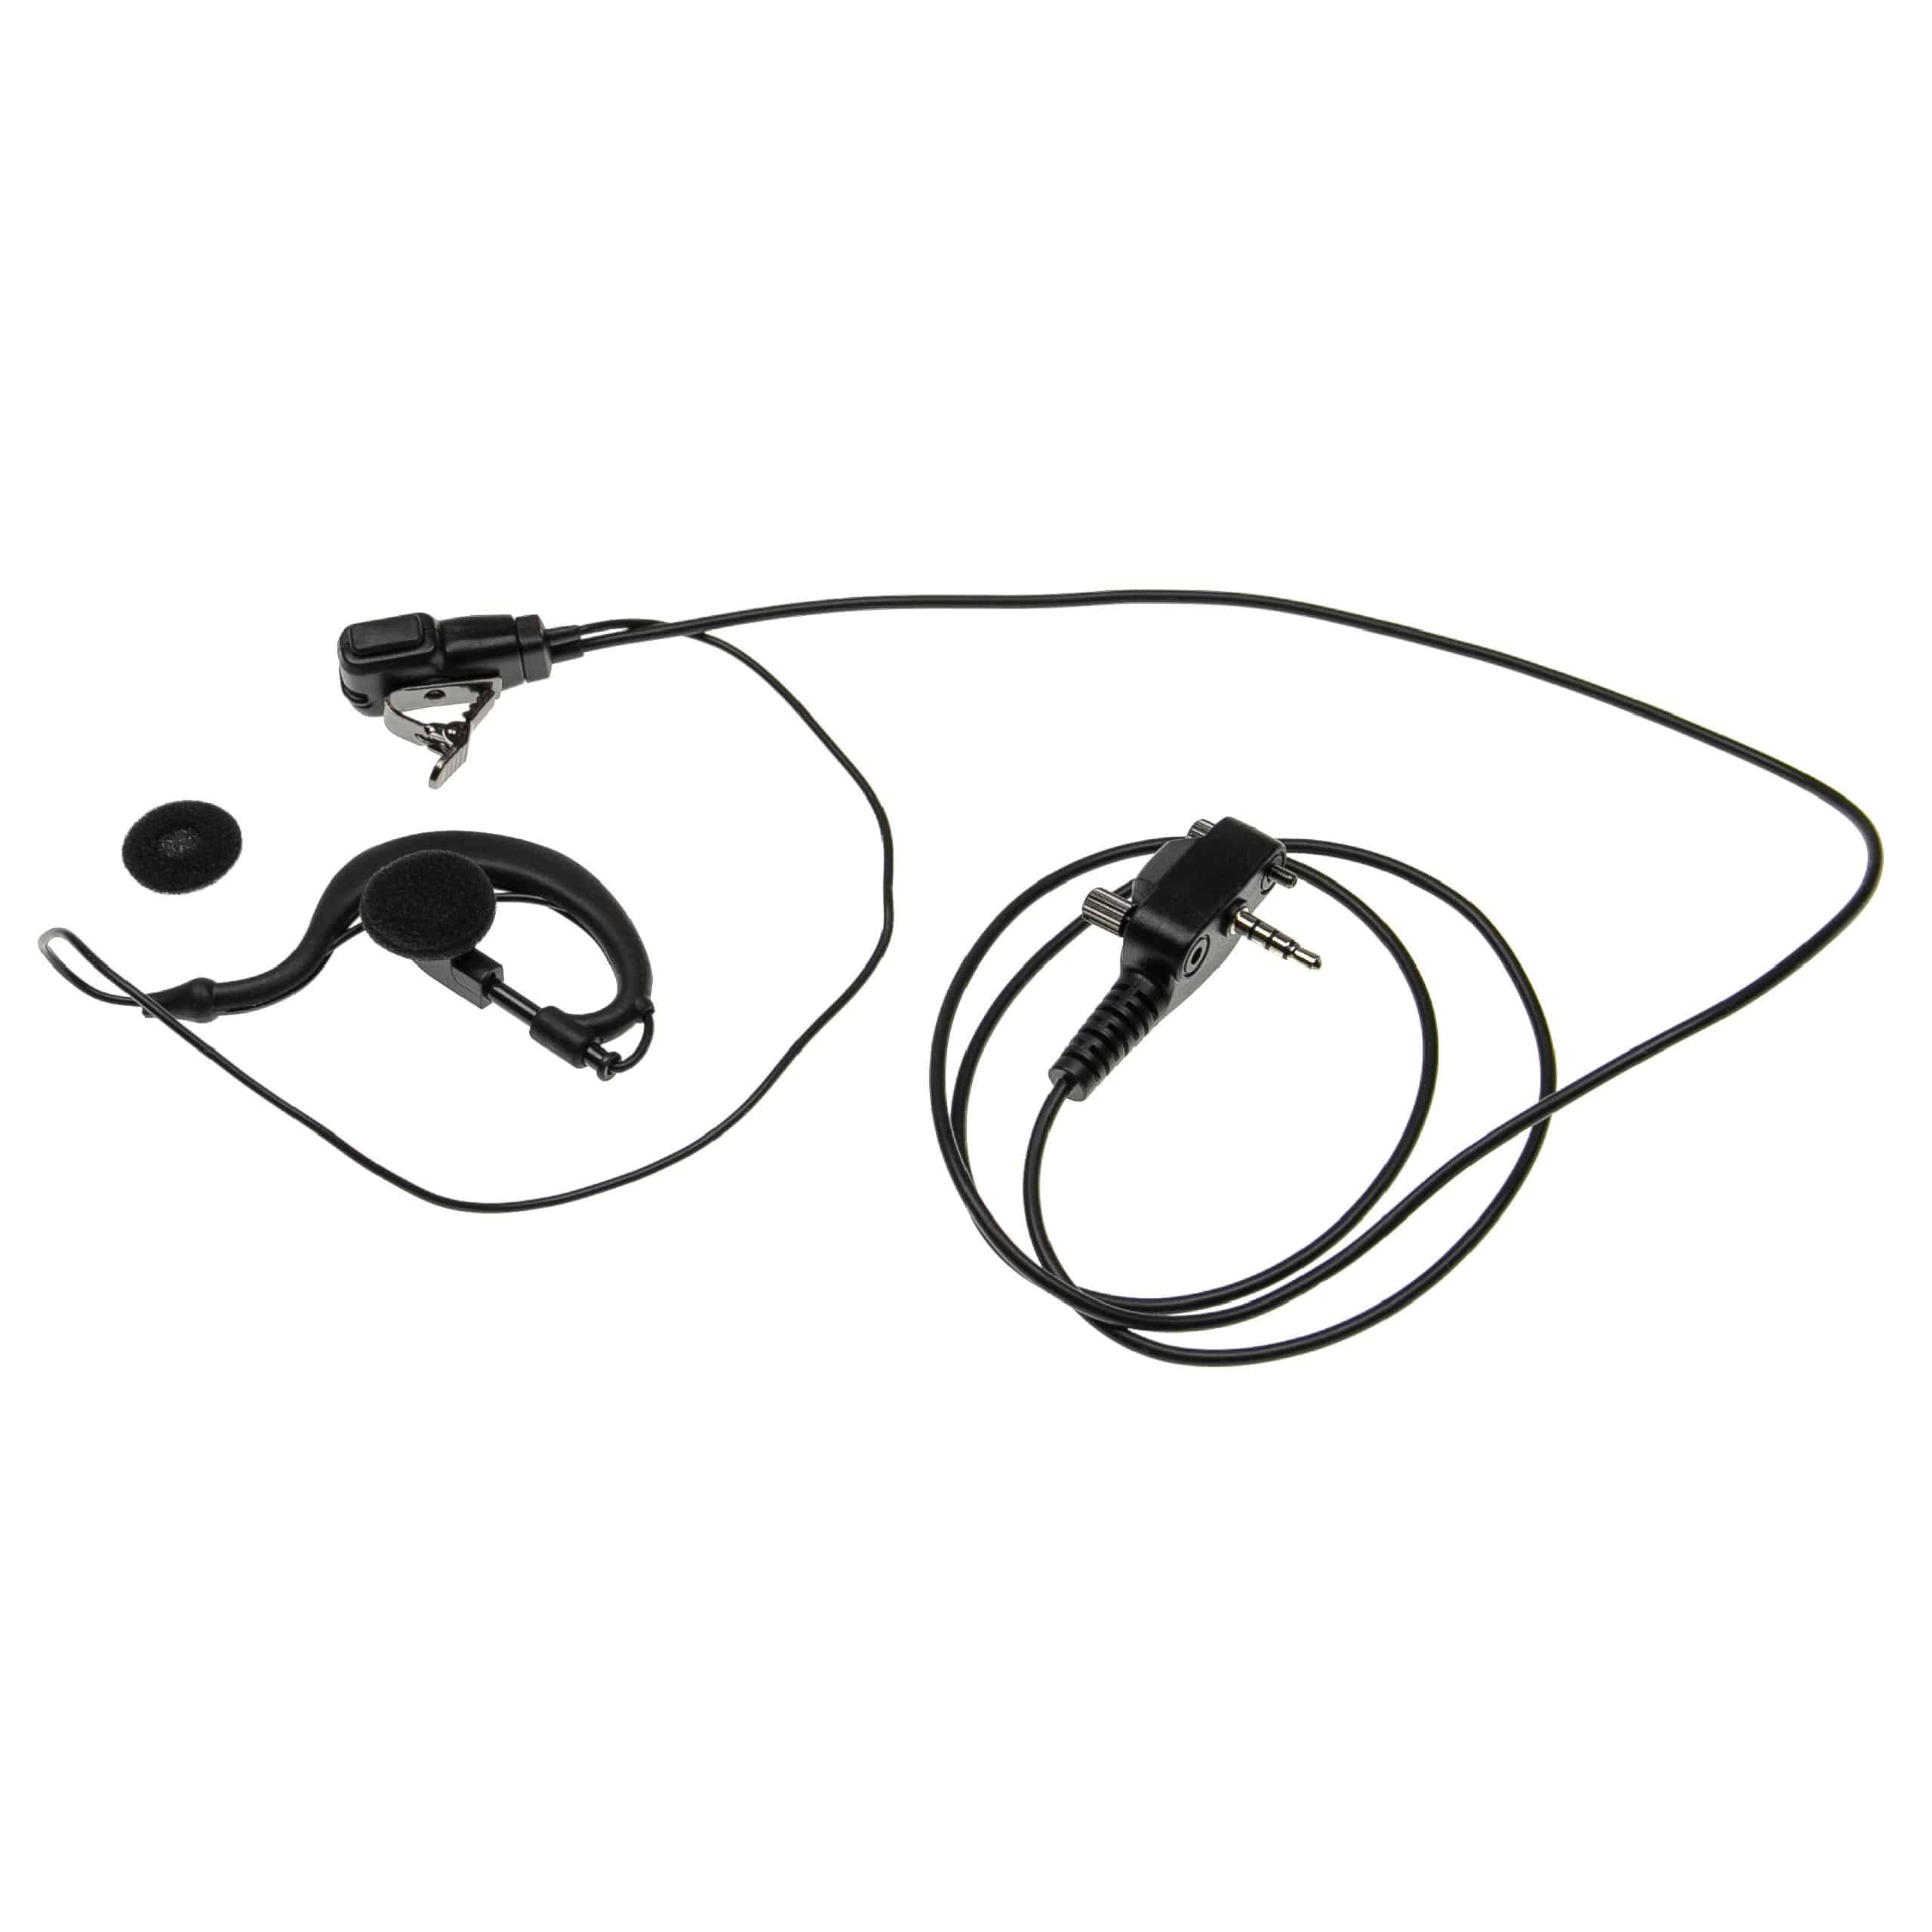 Security headset per ricetrasmittente Yaesu Vertex VX-230 - nero + pulsante chiamata + supporto clip